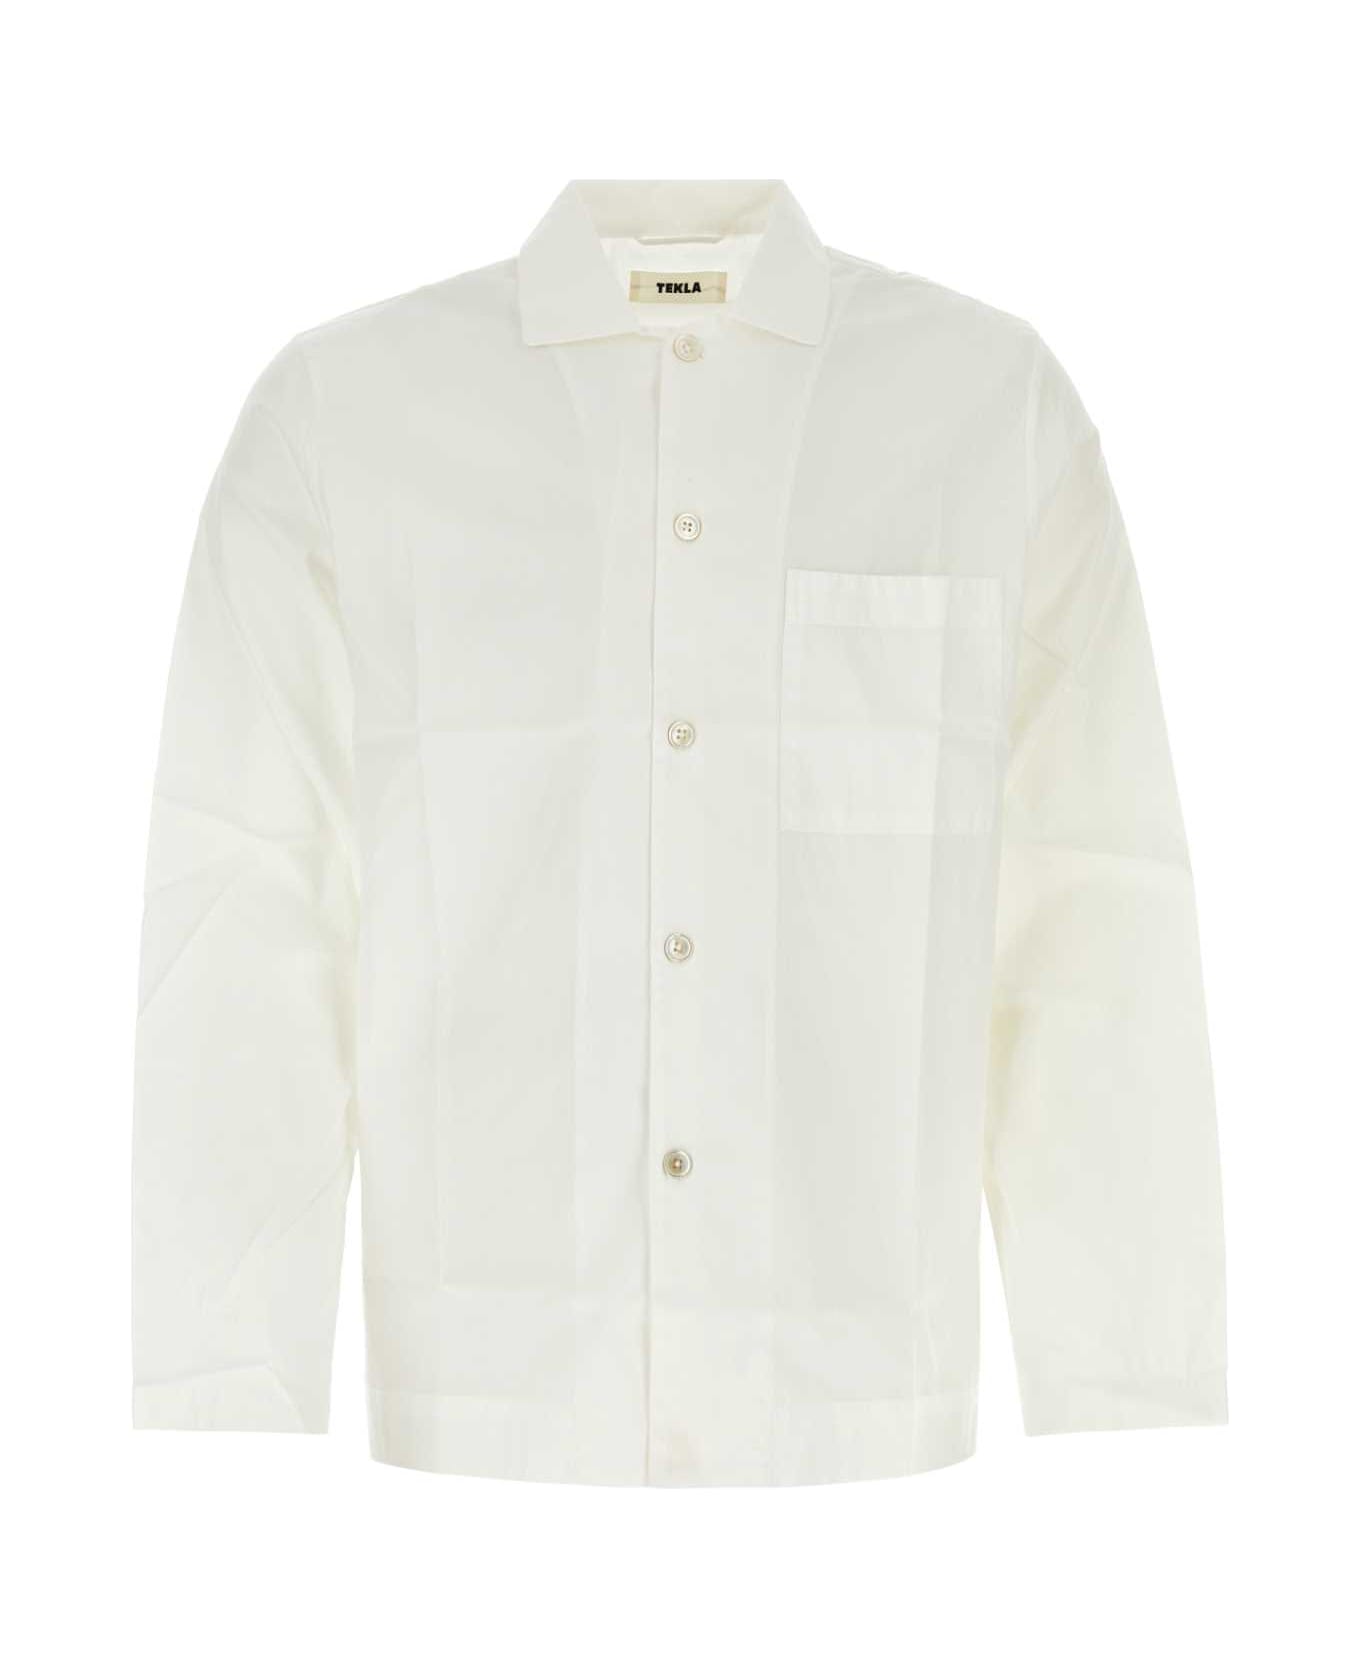 Tekla White Cotton Pyjama Shirt - ALABASTERWHITE